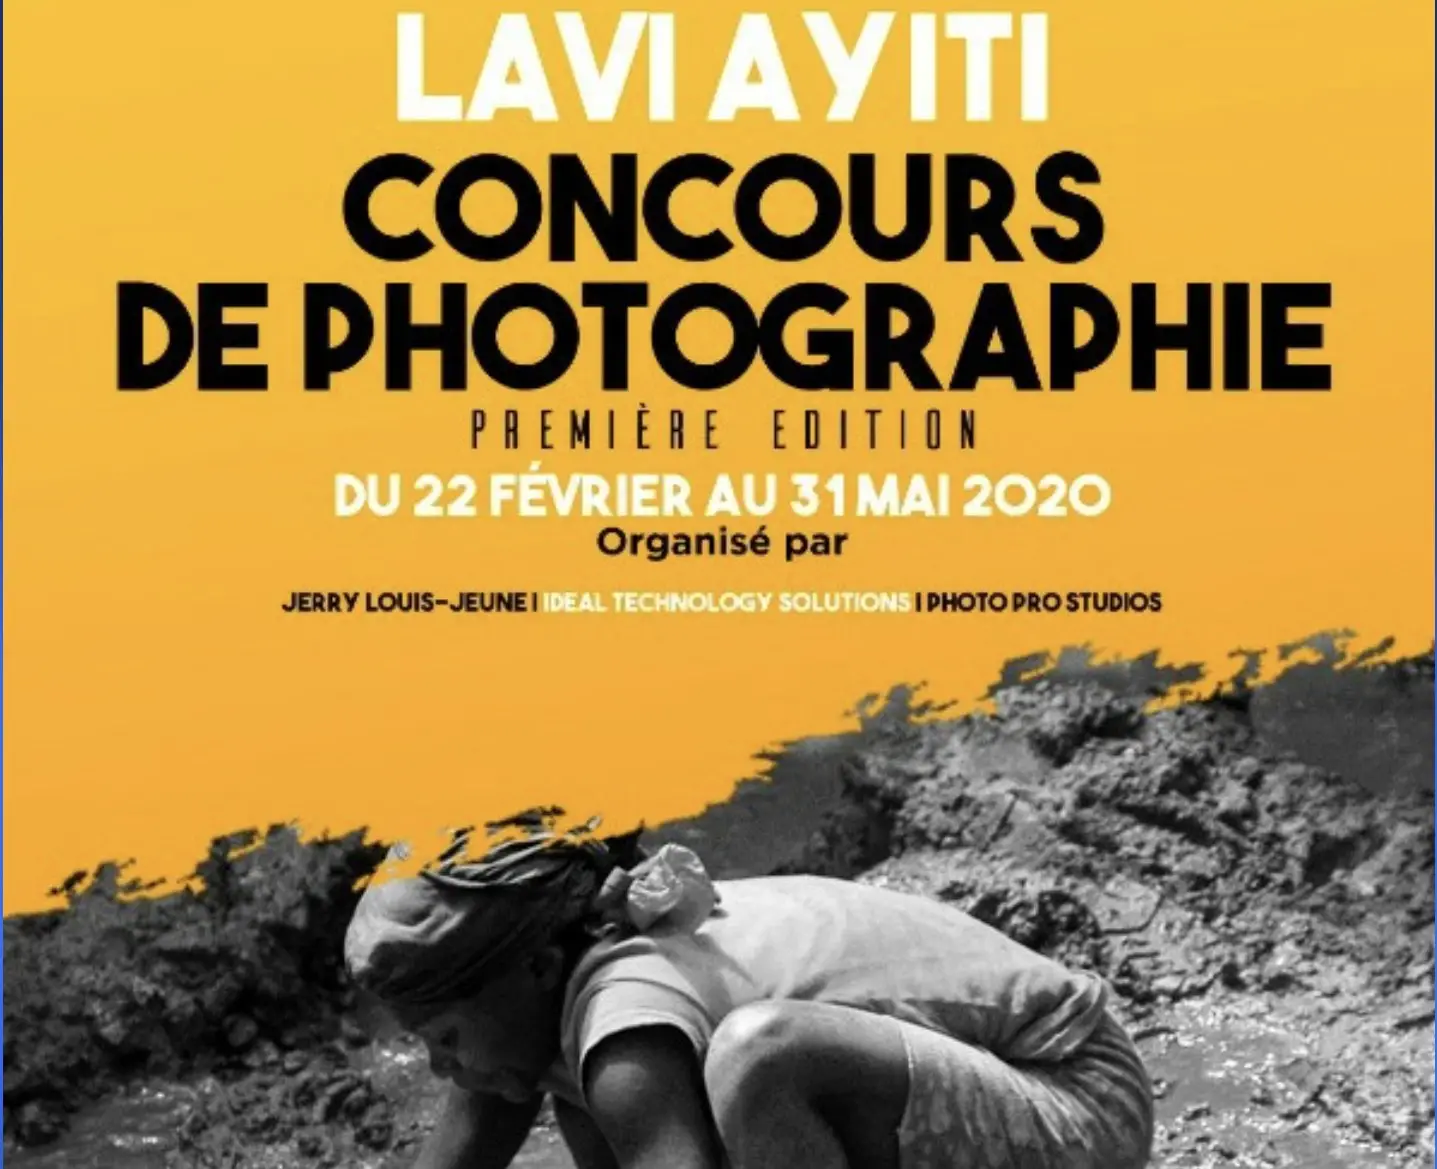 Haïti Culture - Concours de Photographie National